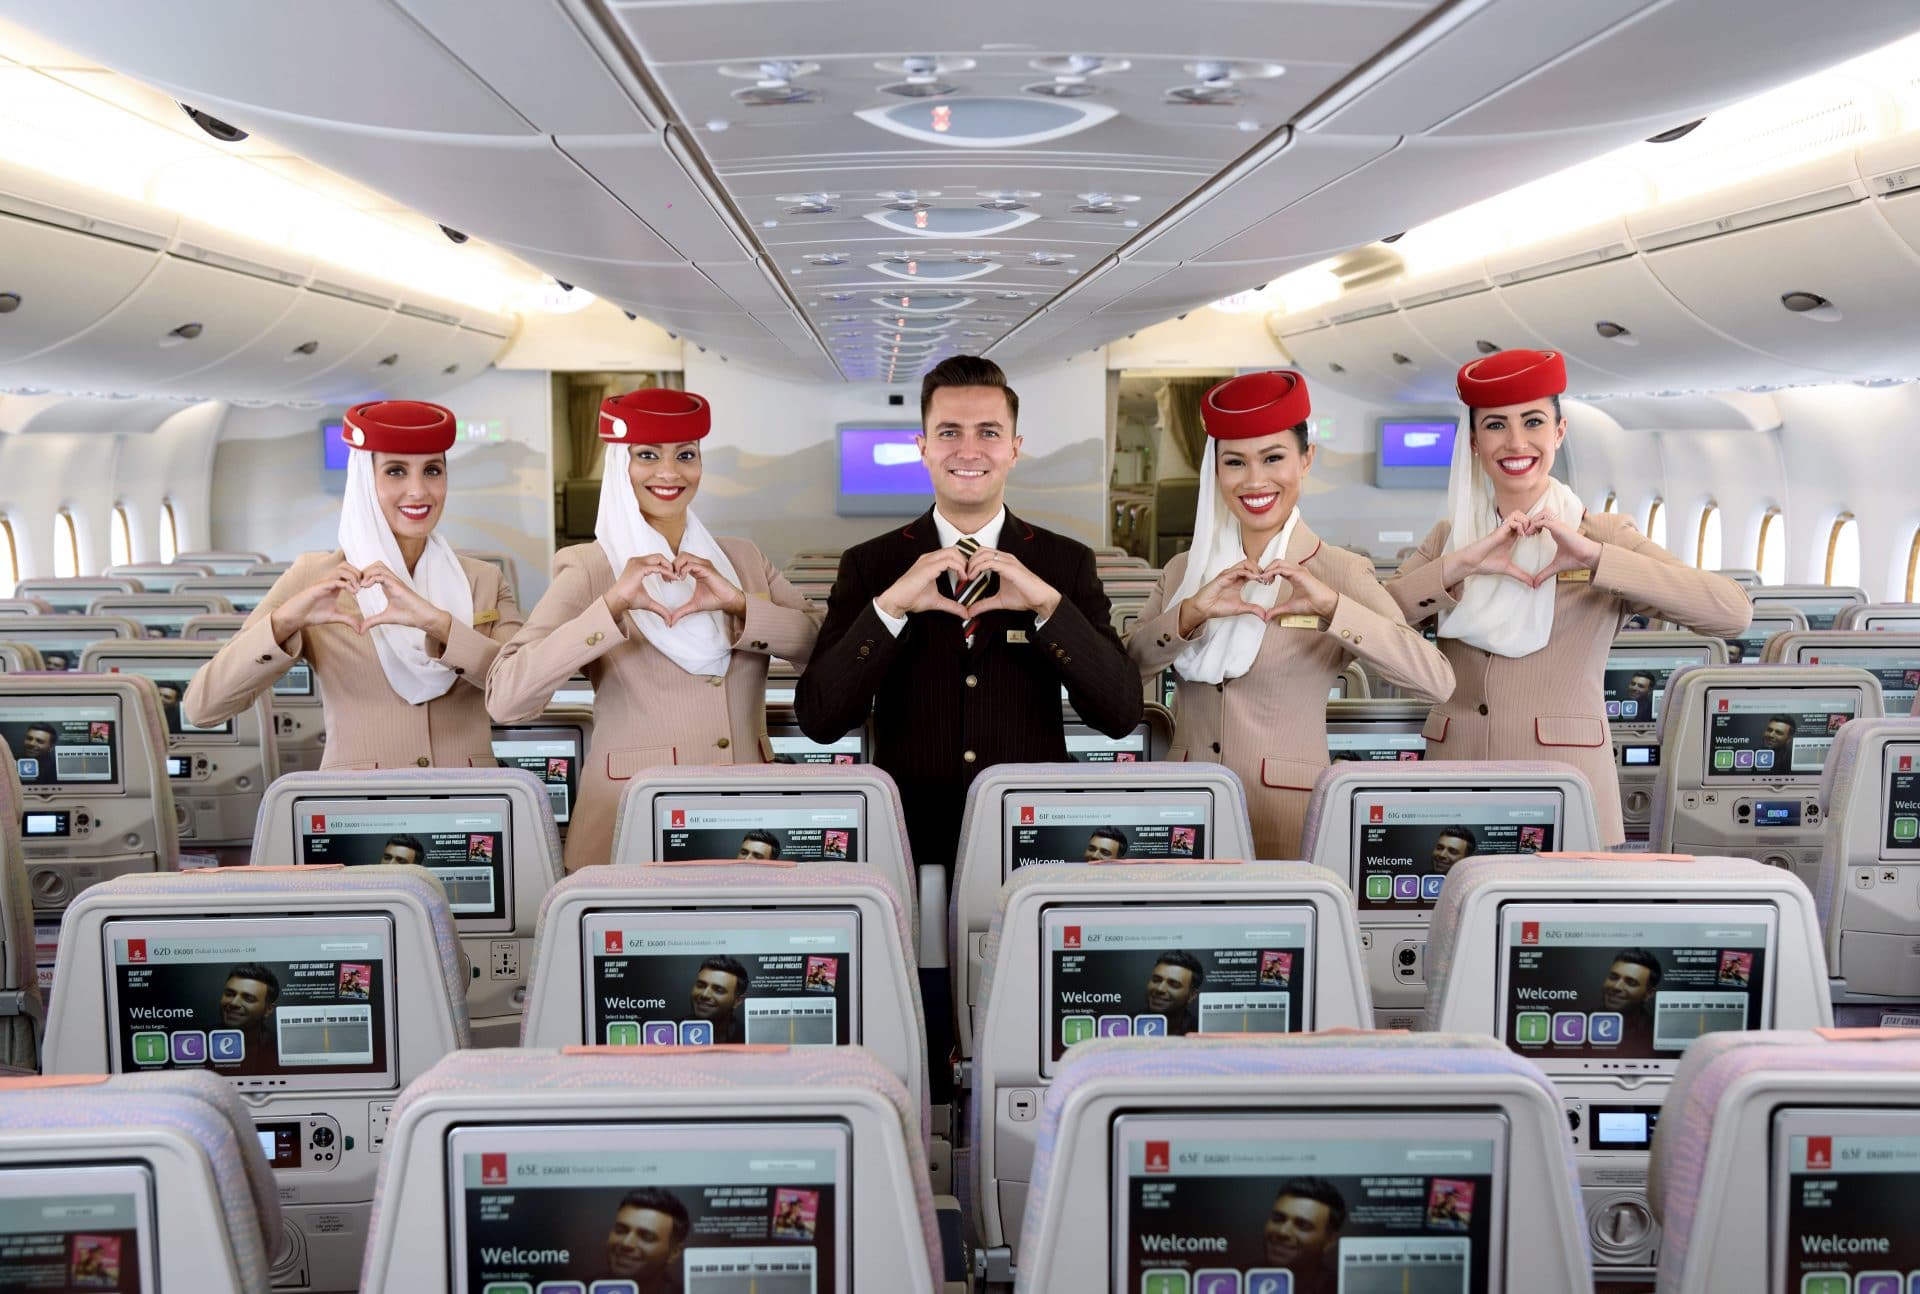 Сайт эмиратские авиалинии. Авиалинии Дубай Эмирейтс. Дубайская авиакомпания Emirates. Авиапарк Emirates Airlines. Арабские авиалинии Emirates самолеты.